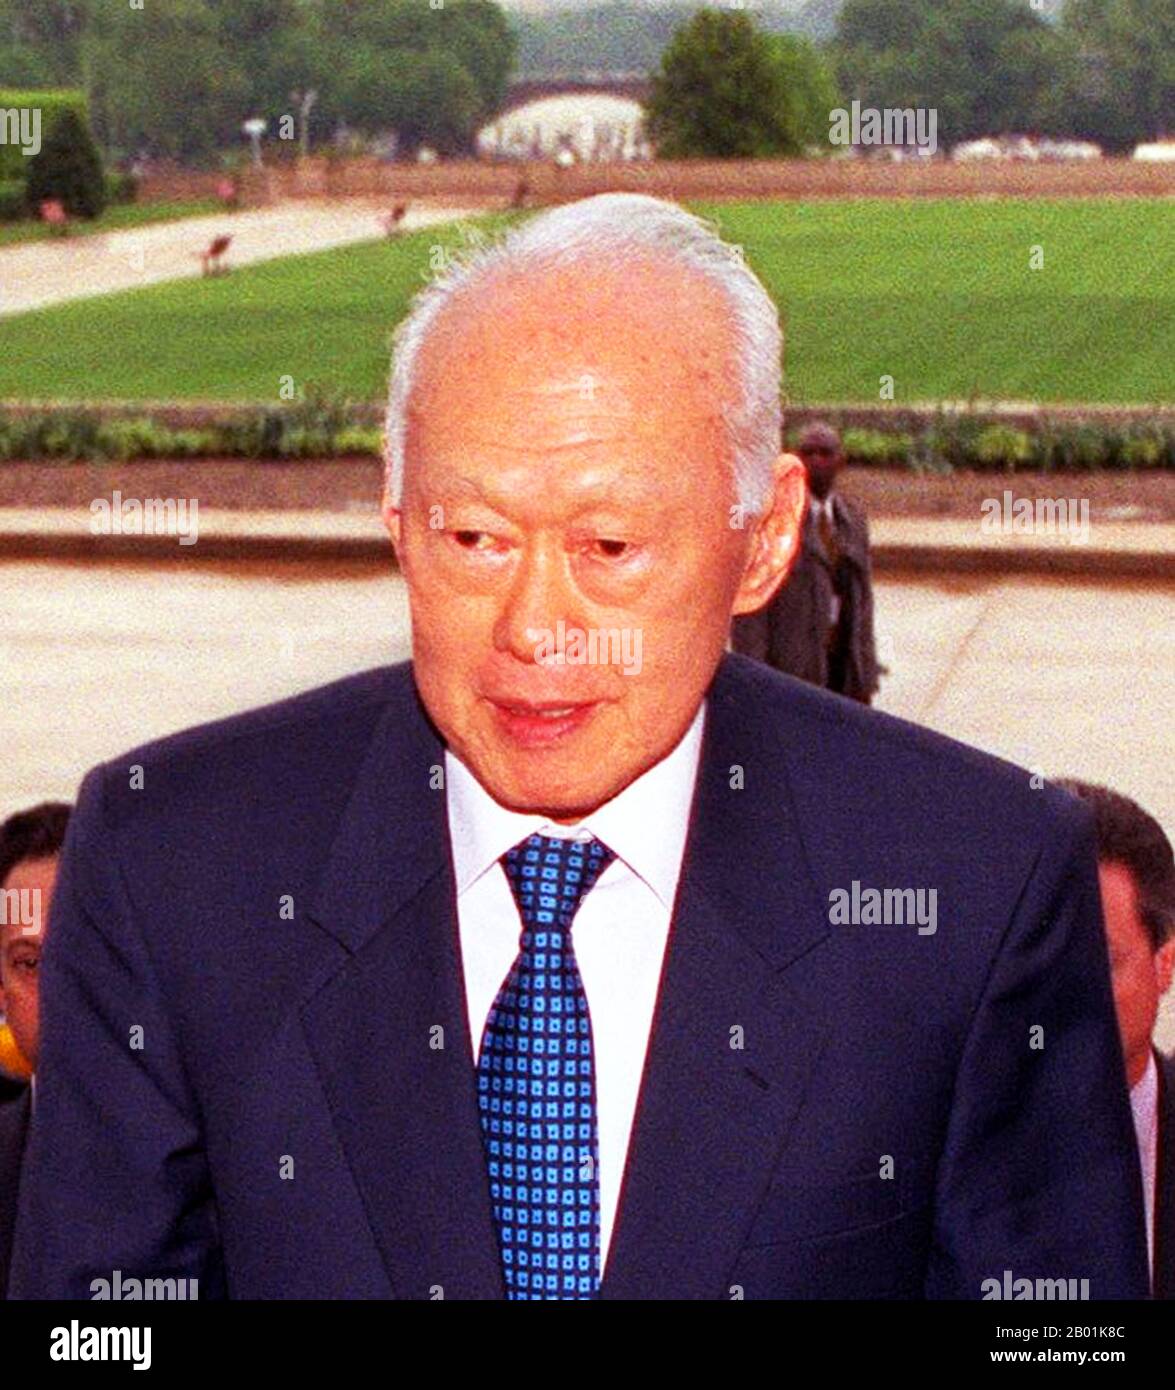 Singapore: Lee Kuan Yew (16 settembre 1923 - 23 marzo 2015), primo primo ministro della Repubblica di Singapore (r. 1959-1990), scortato nel Pentagono, USA, durante il suo mandato di alto ministro (r. 1990-2004), il 2 maggio 2002. Lee Kuan Yew, GCMG, CH (anche Lee Kwan-Yew), è uno statista singaporiano. È stato il primo primo ministro della Repubblica di Singapore ed è stato uno dei primi ministri più longevi al mondo. Supervisionò la separazione di Singapore dalla Malesia nel 1965 e la sua successiva trasformazione da avamposto coloniale sottosviluppato a una grande potenza economica asiatica. Foto Stock